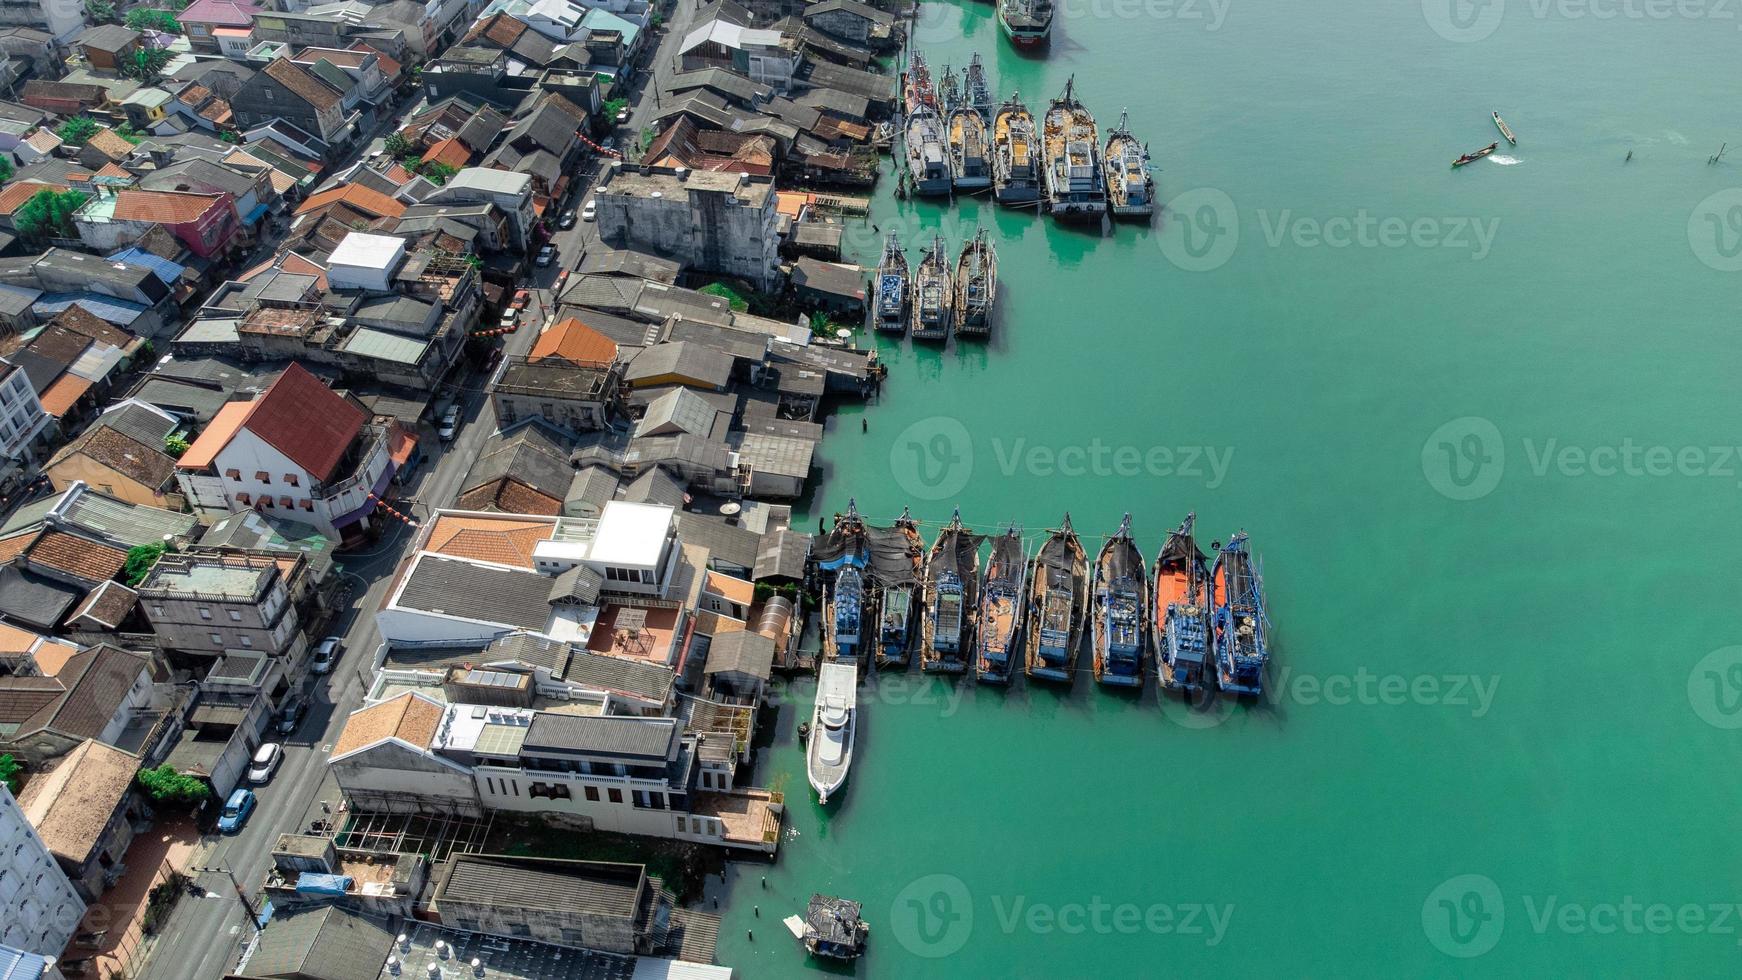 vista aérea del muelle de pescadores que tiene muchos barcos anclados para transportar mariscos y suministros en la isla de songkhla, tailandia foto